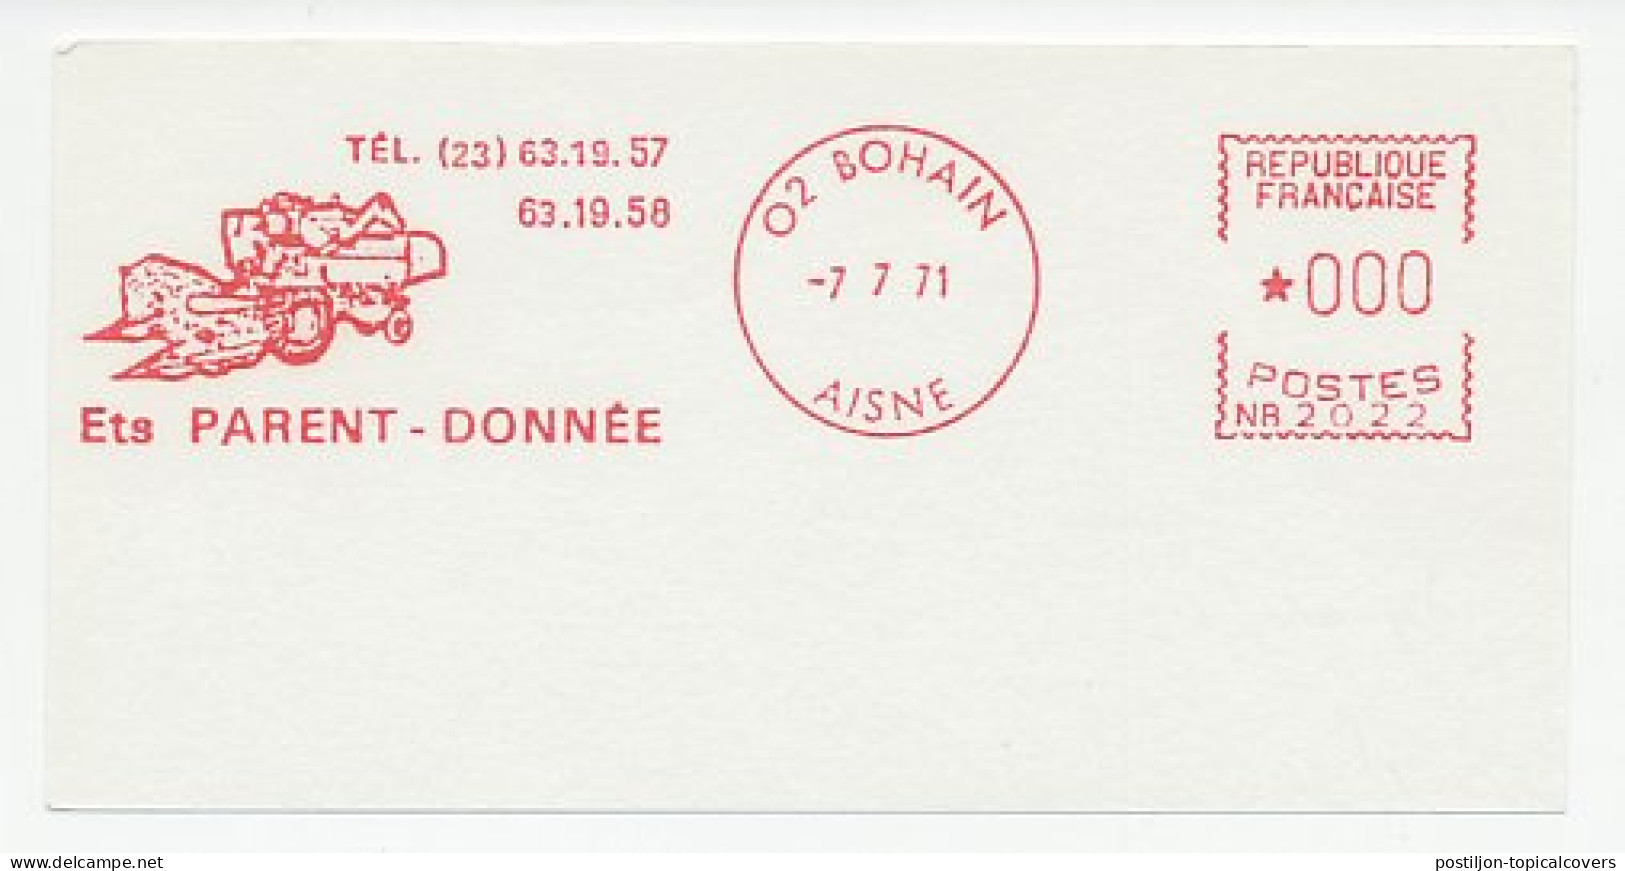 Test Meter Card France 1971 Harvester - Agriculture